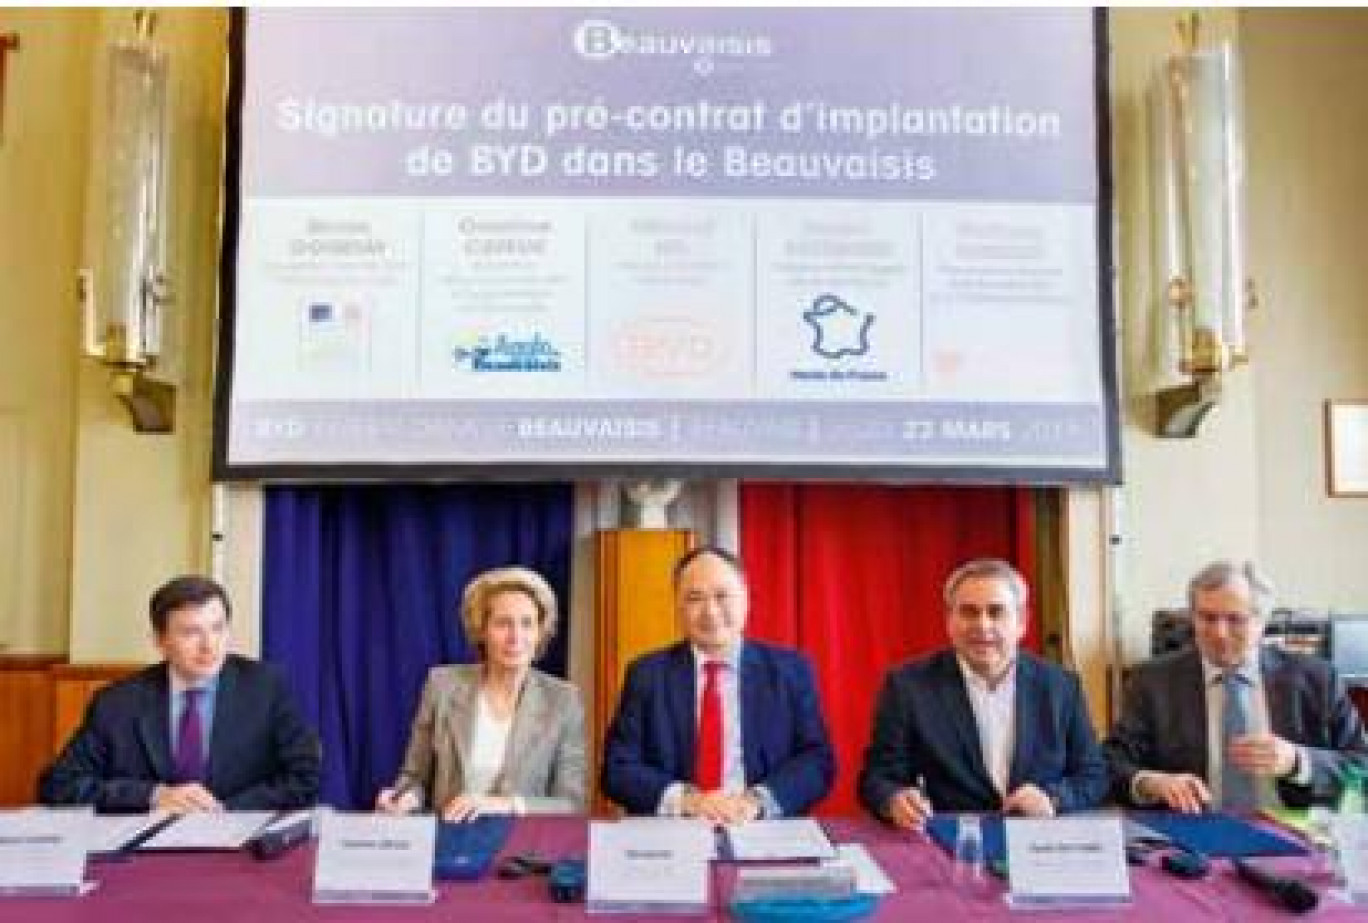 L’officialisation de l’implantation du groupe BYD a eu lieu le 23 mars dernier, à la mairie de Beauvais.